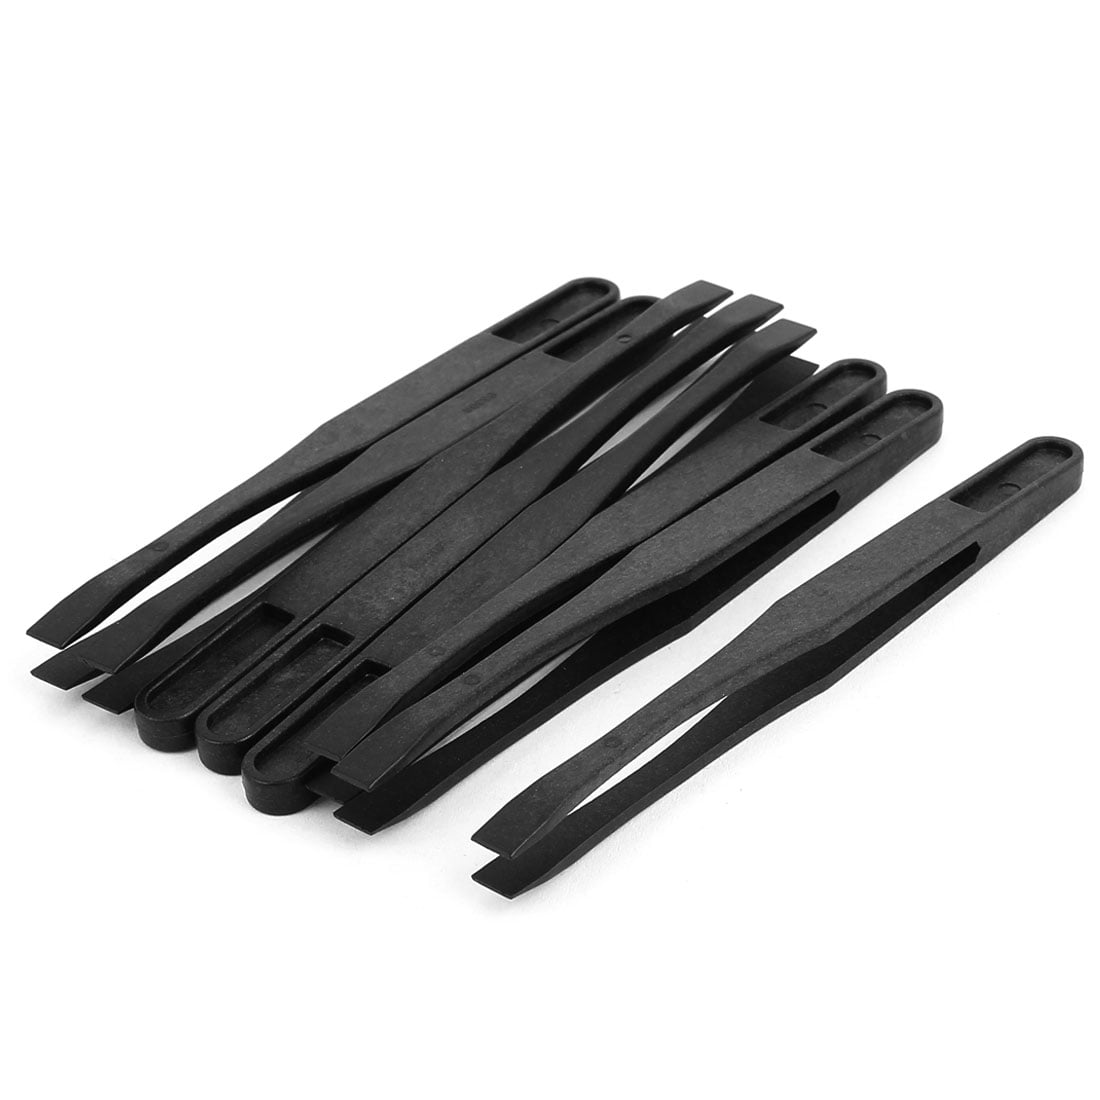 Uxcell 4.5 Length Black Plastic Anti-Static Tweezers Repair Tool 